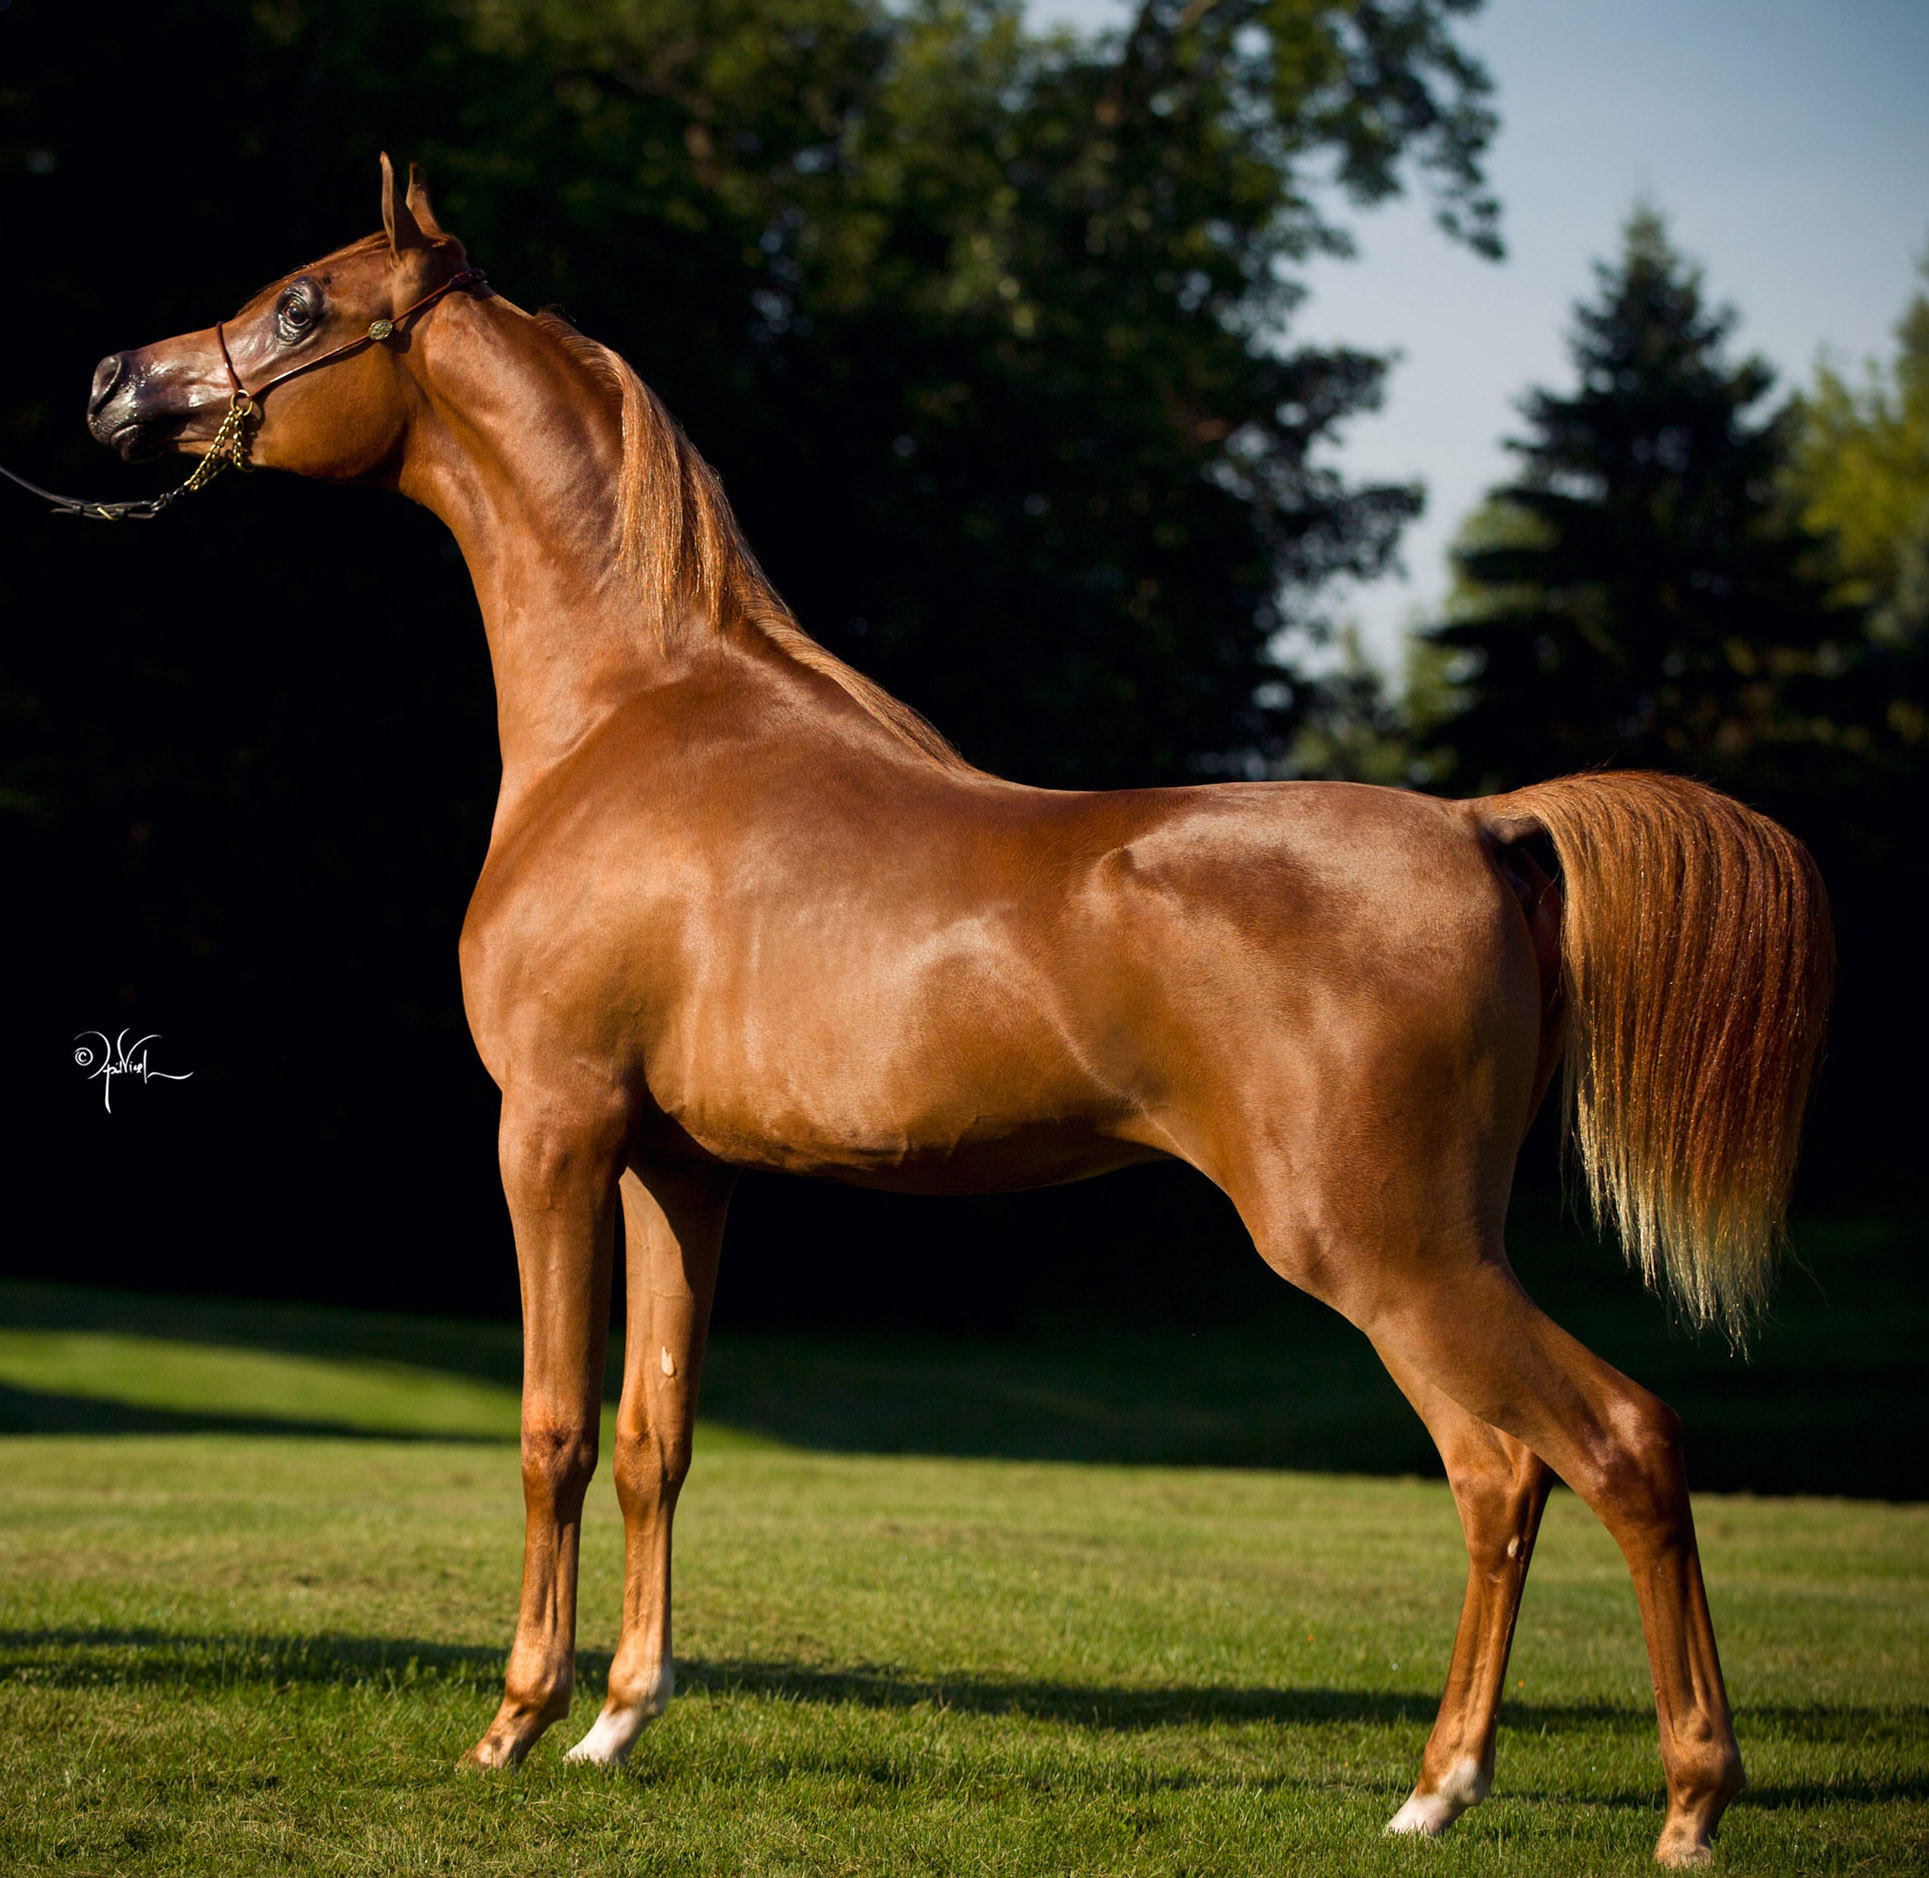 Породистый конь. Арабская лошадь (арабский скакун). Кохейлан арабская лошадь. Лошади породы арабская чистокровная. Арабская лошадь кохейлан-сиглави.